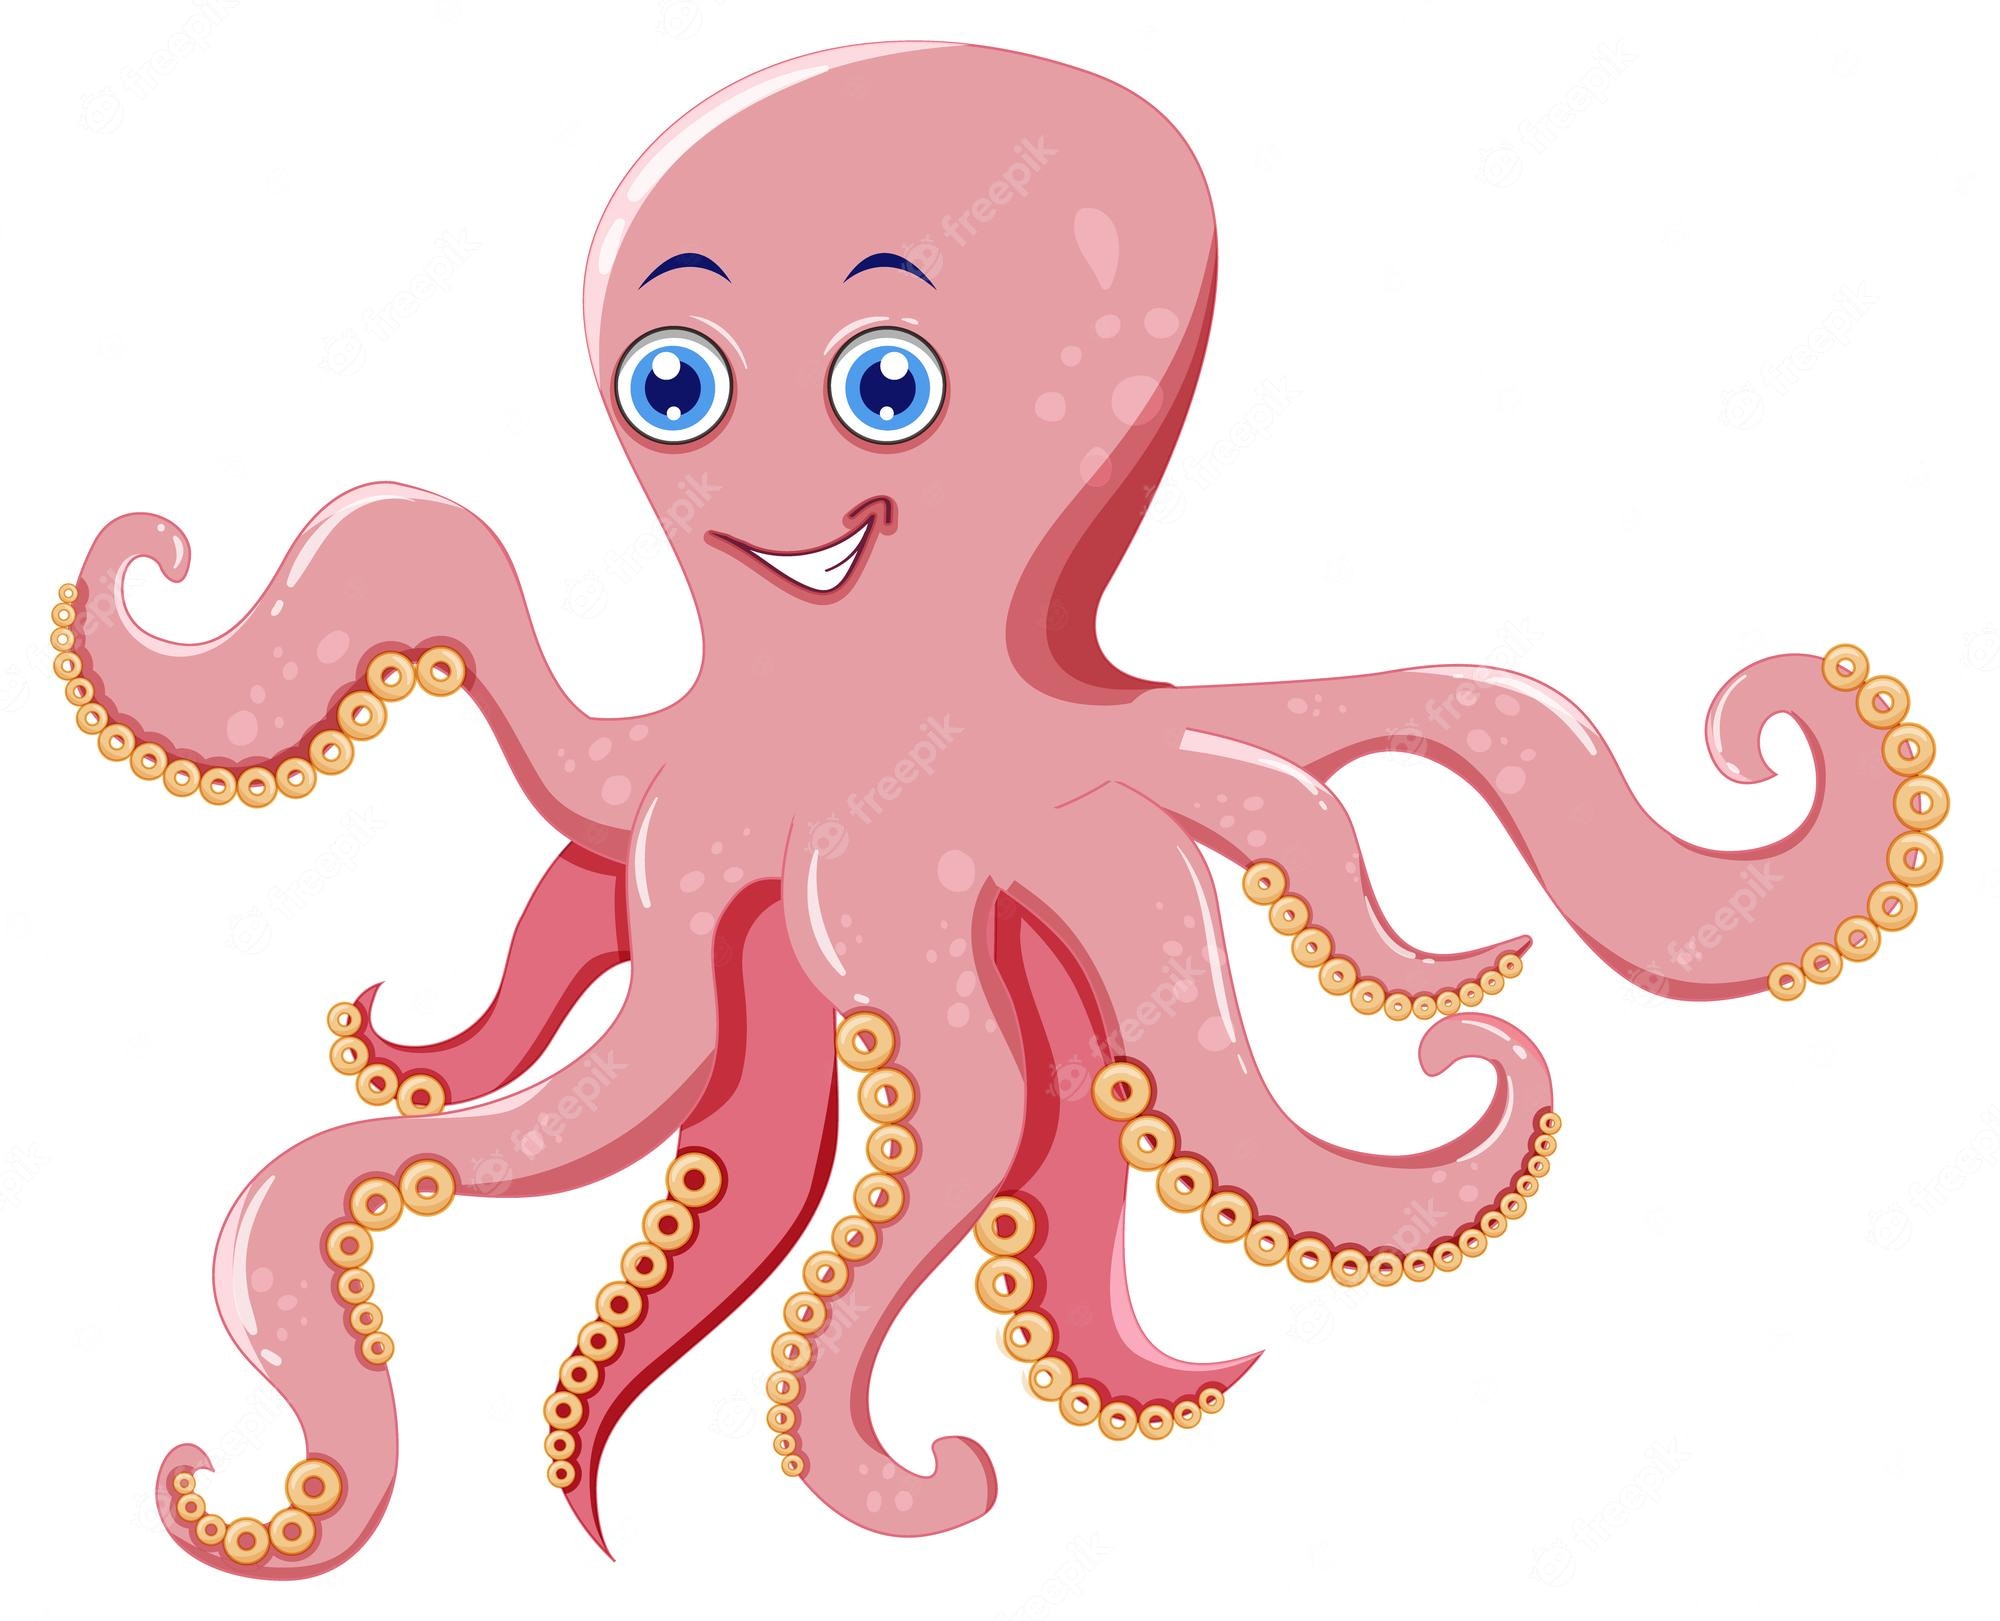 Octopus In My Living Room Scheel